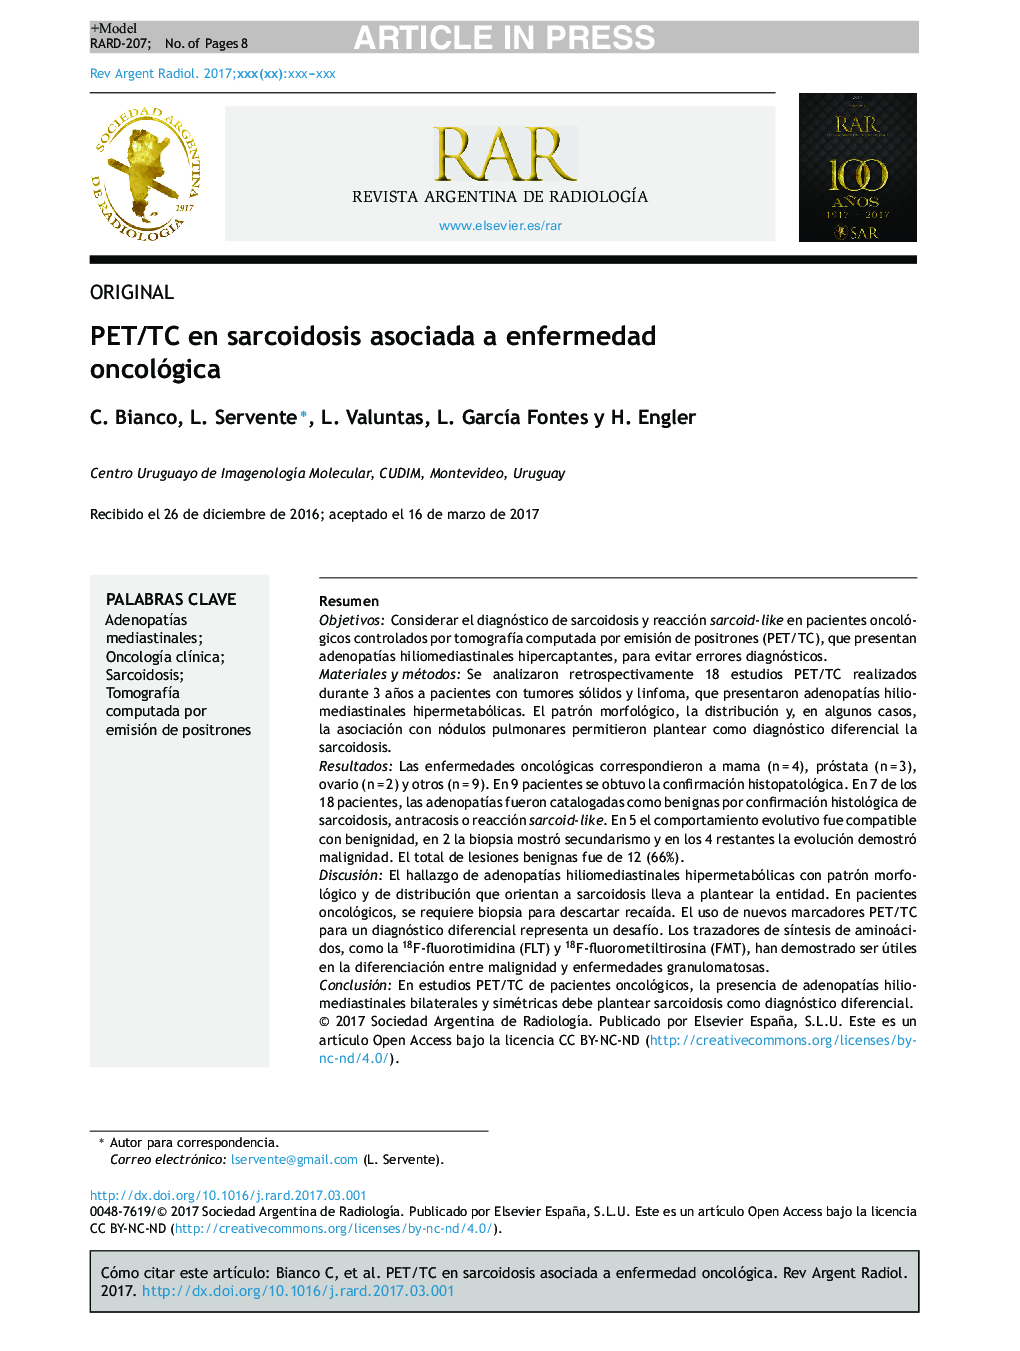 PET/TC en sarcoidosis asociada a enfermedad oncológica